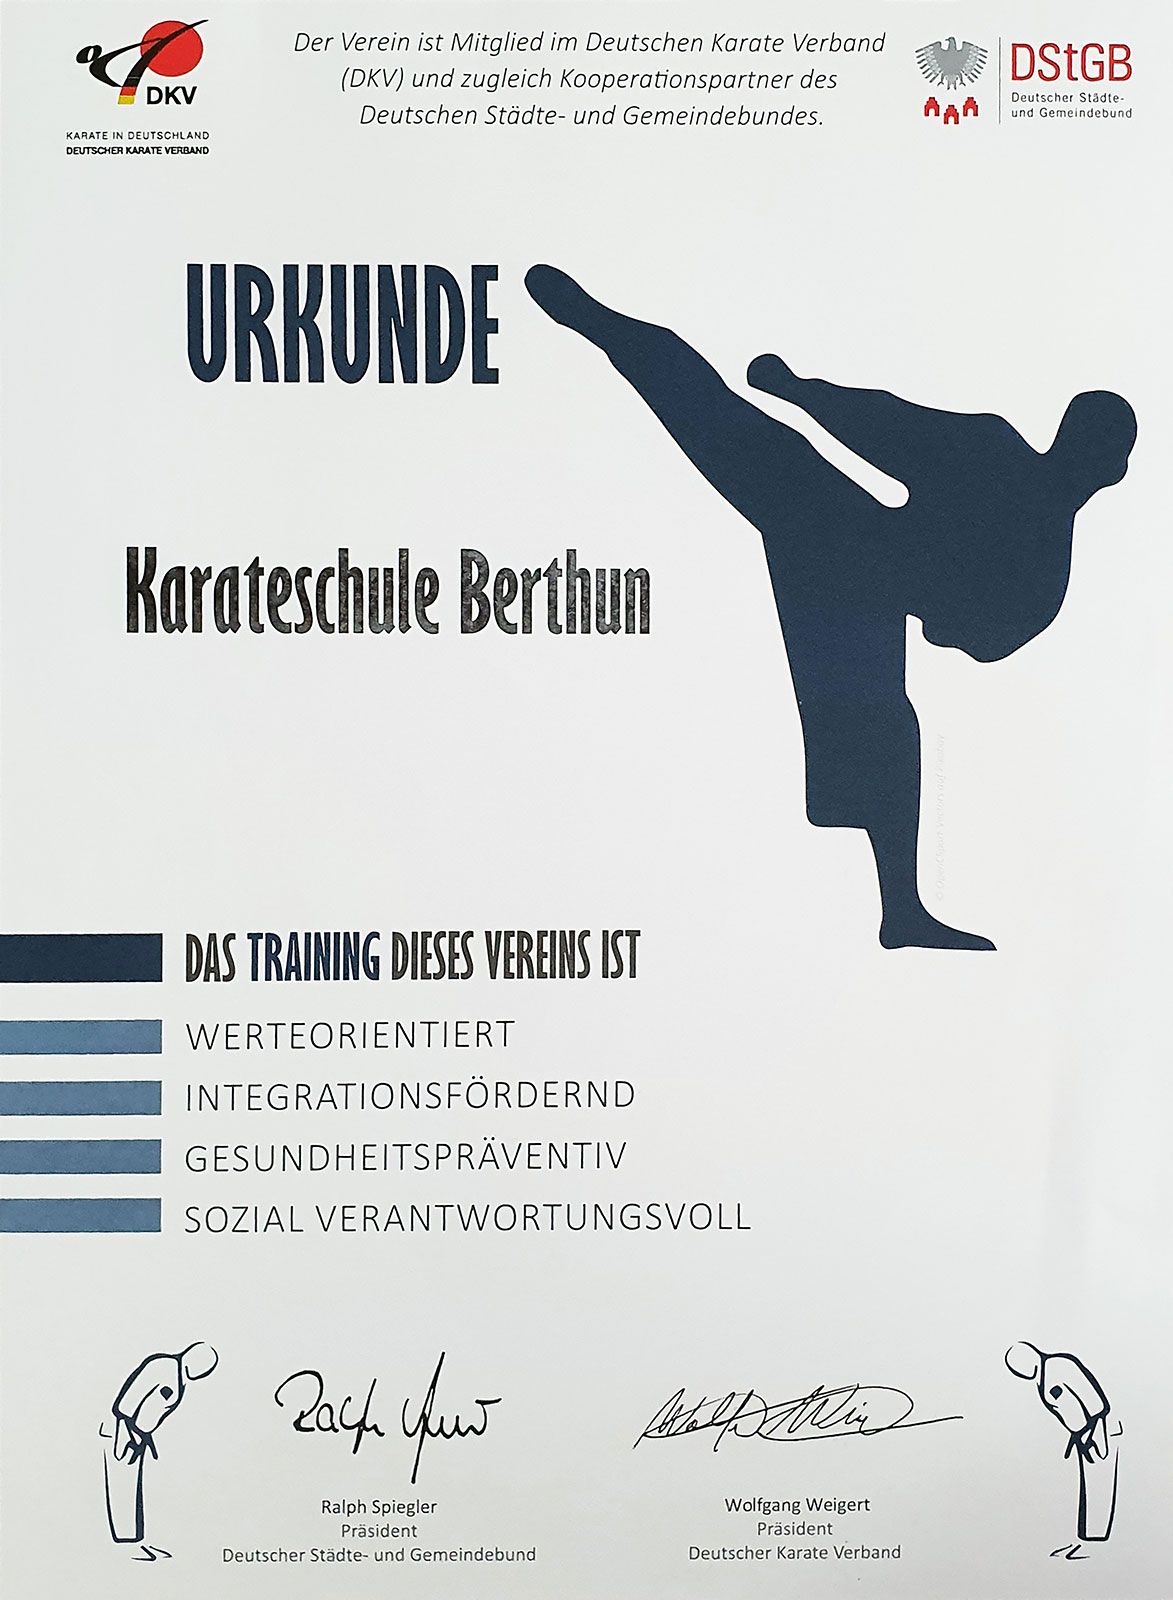 Urkunde von DKV Deutscher Karate Verband